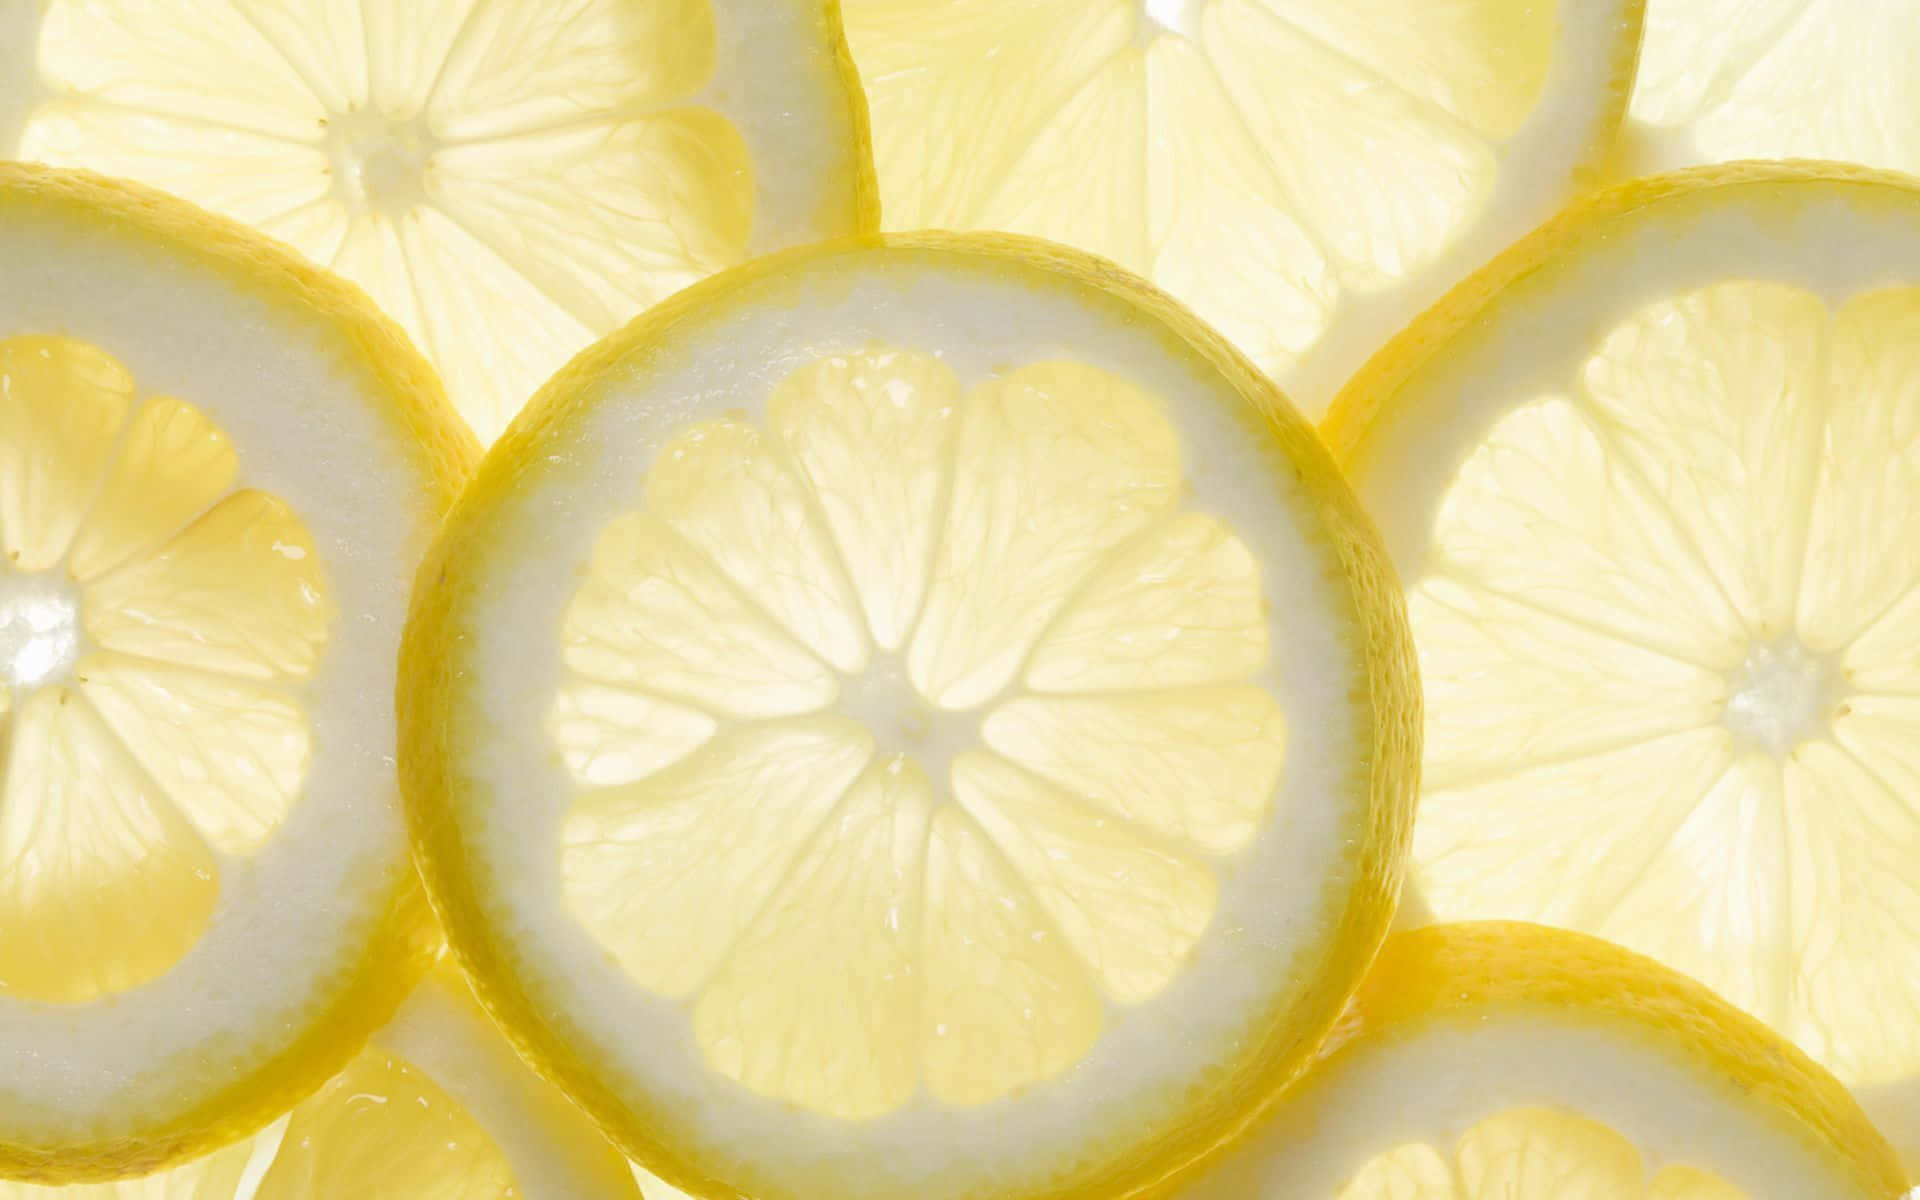 lemon slices wallpaper